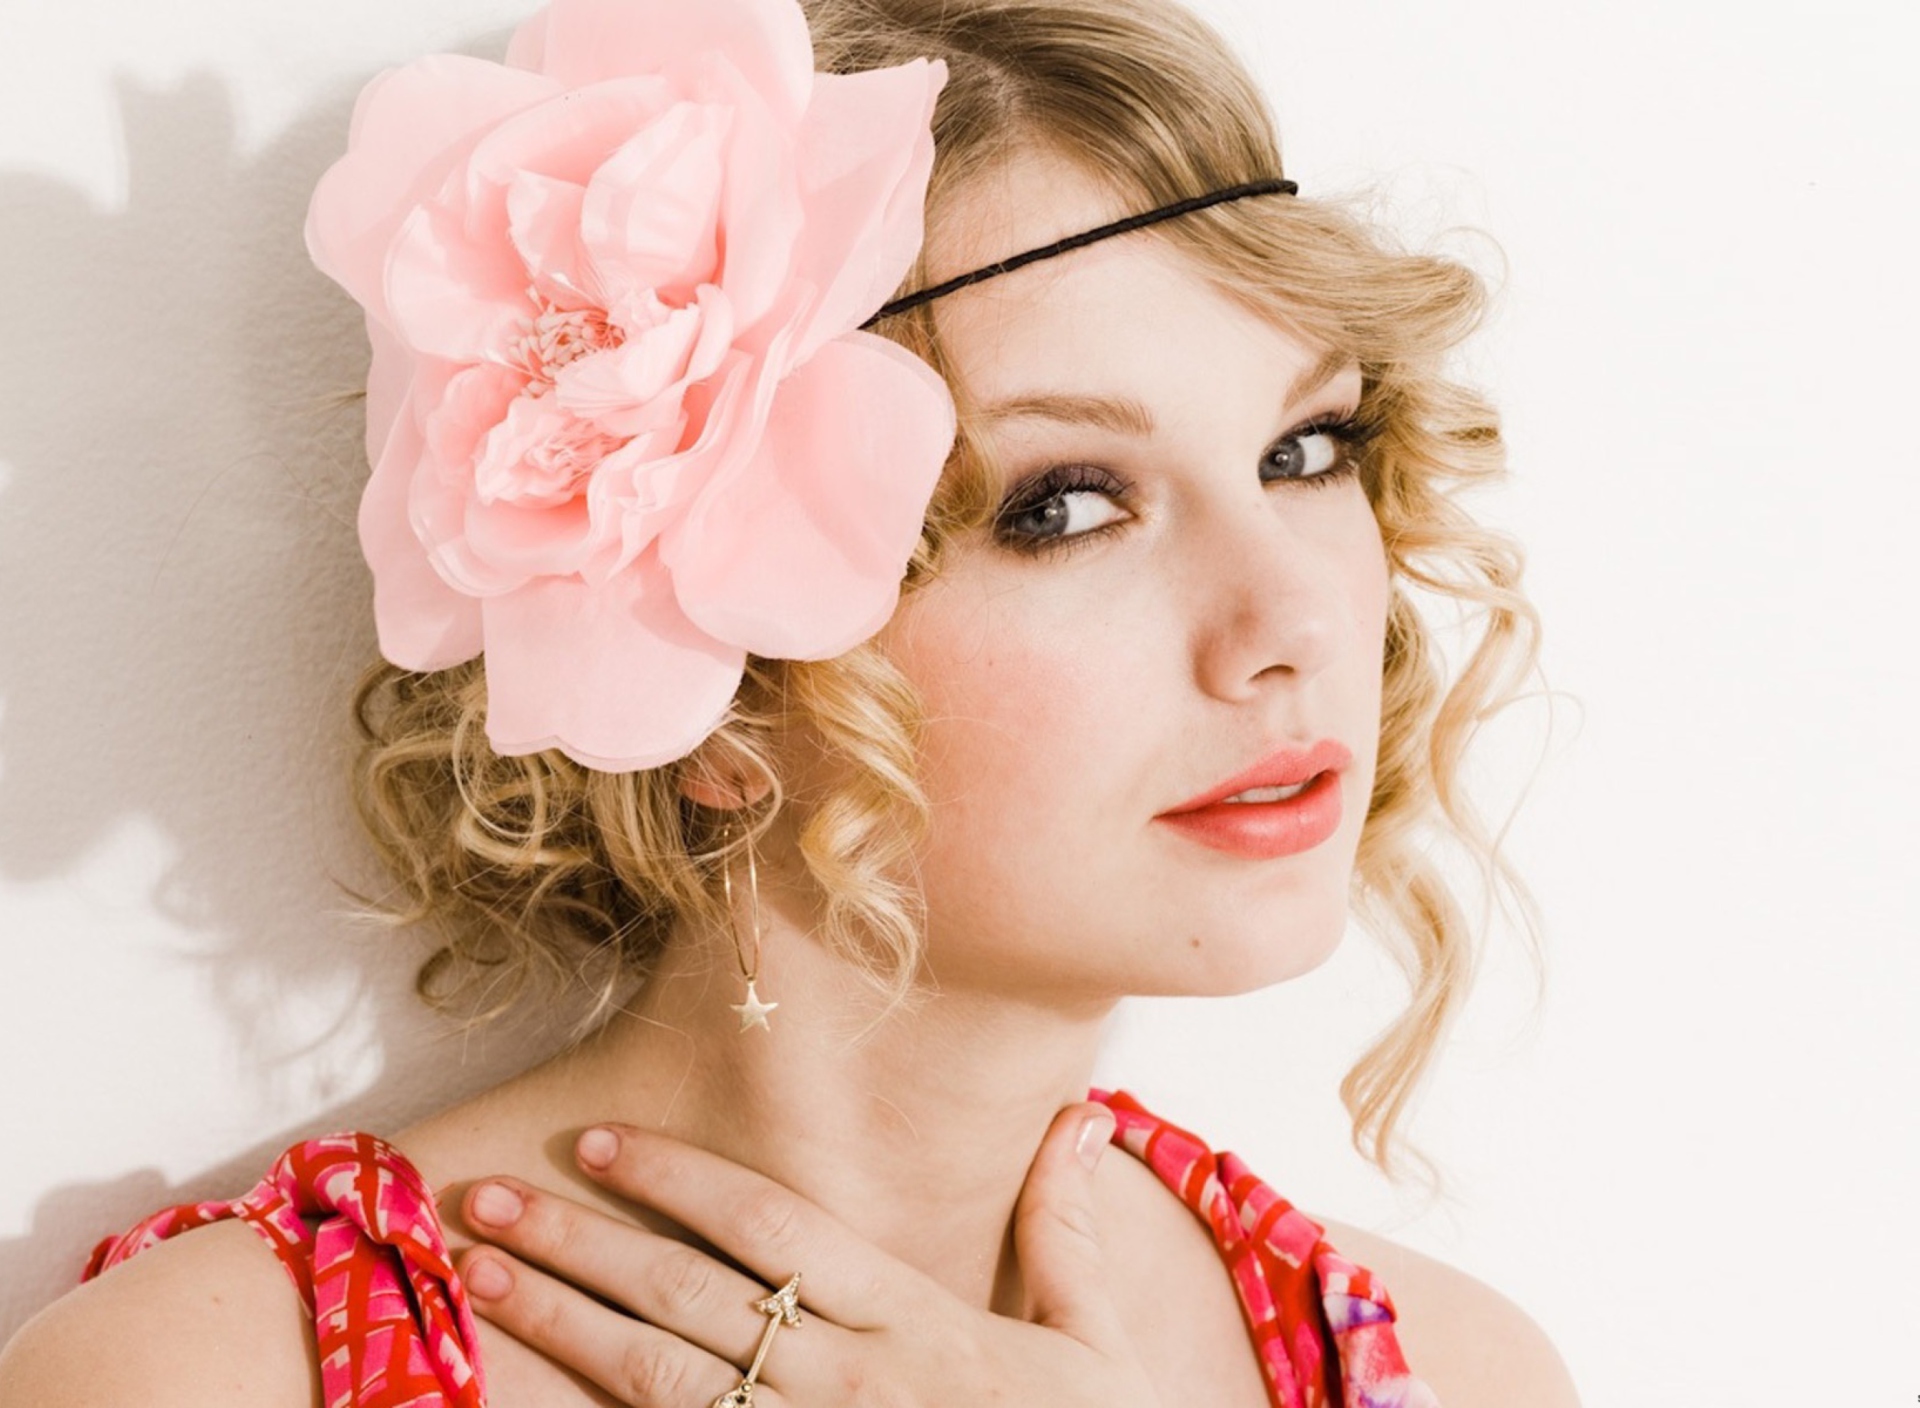 Обои Taylor Swift With Pink Rose On Head 1920x1408